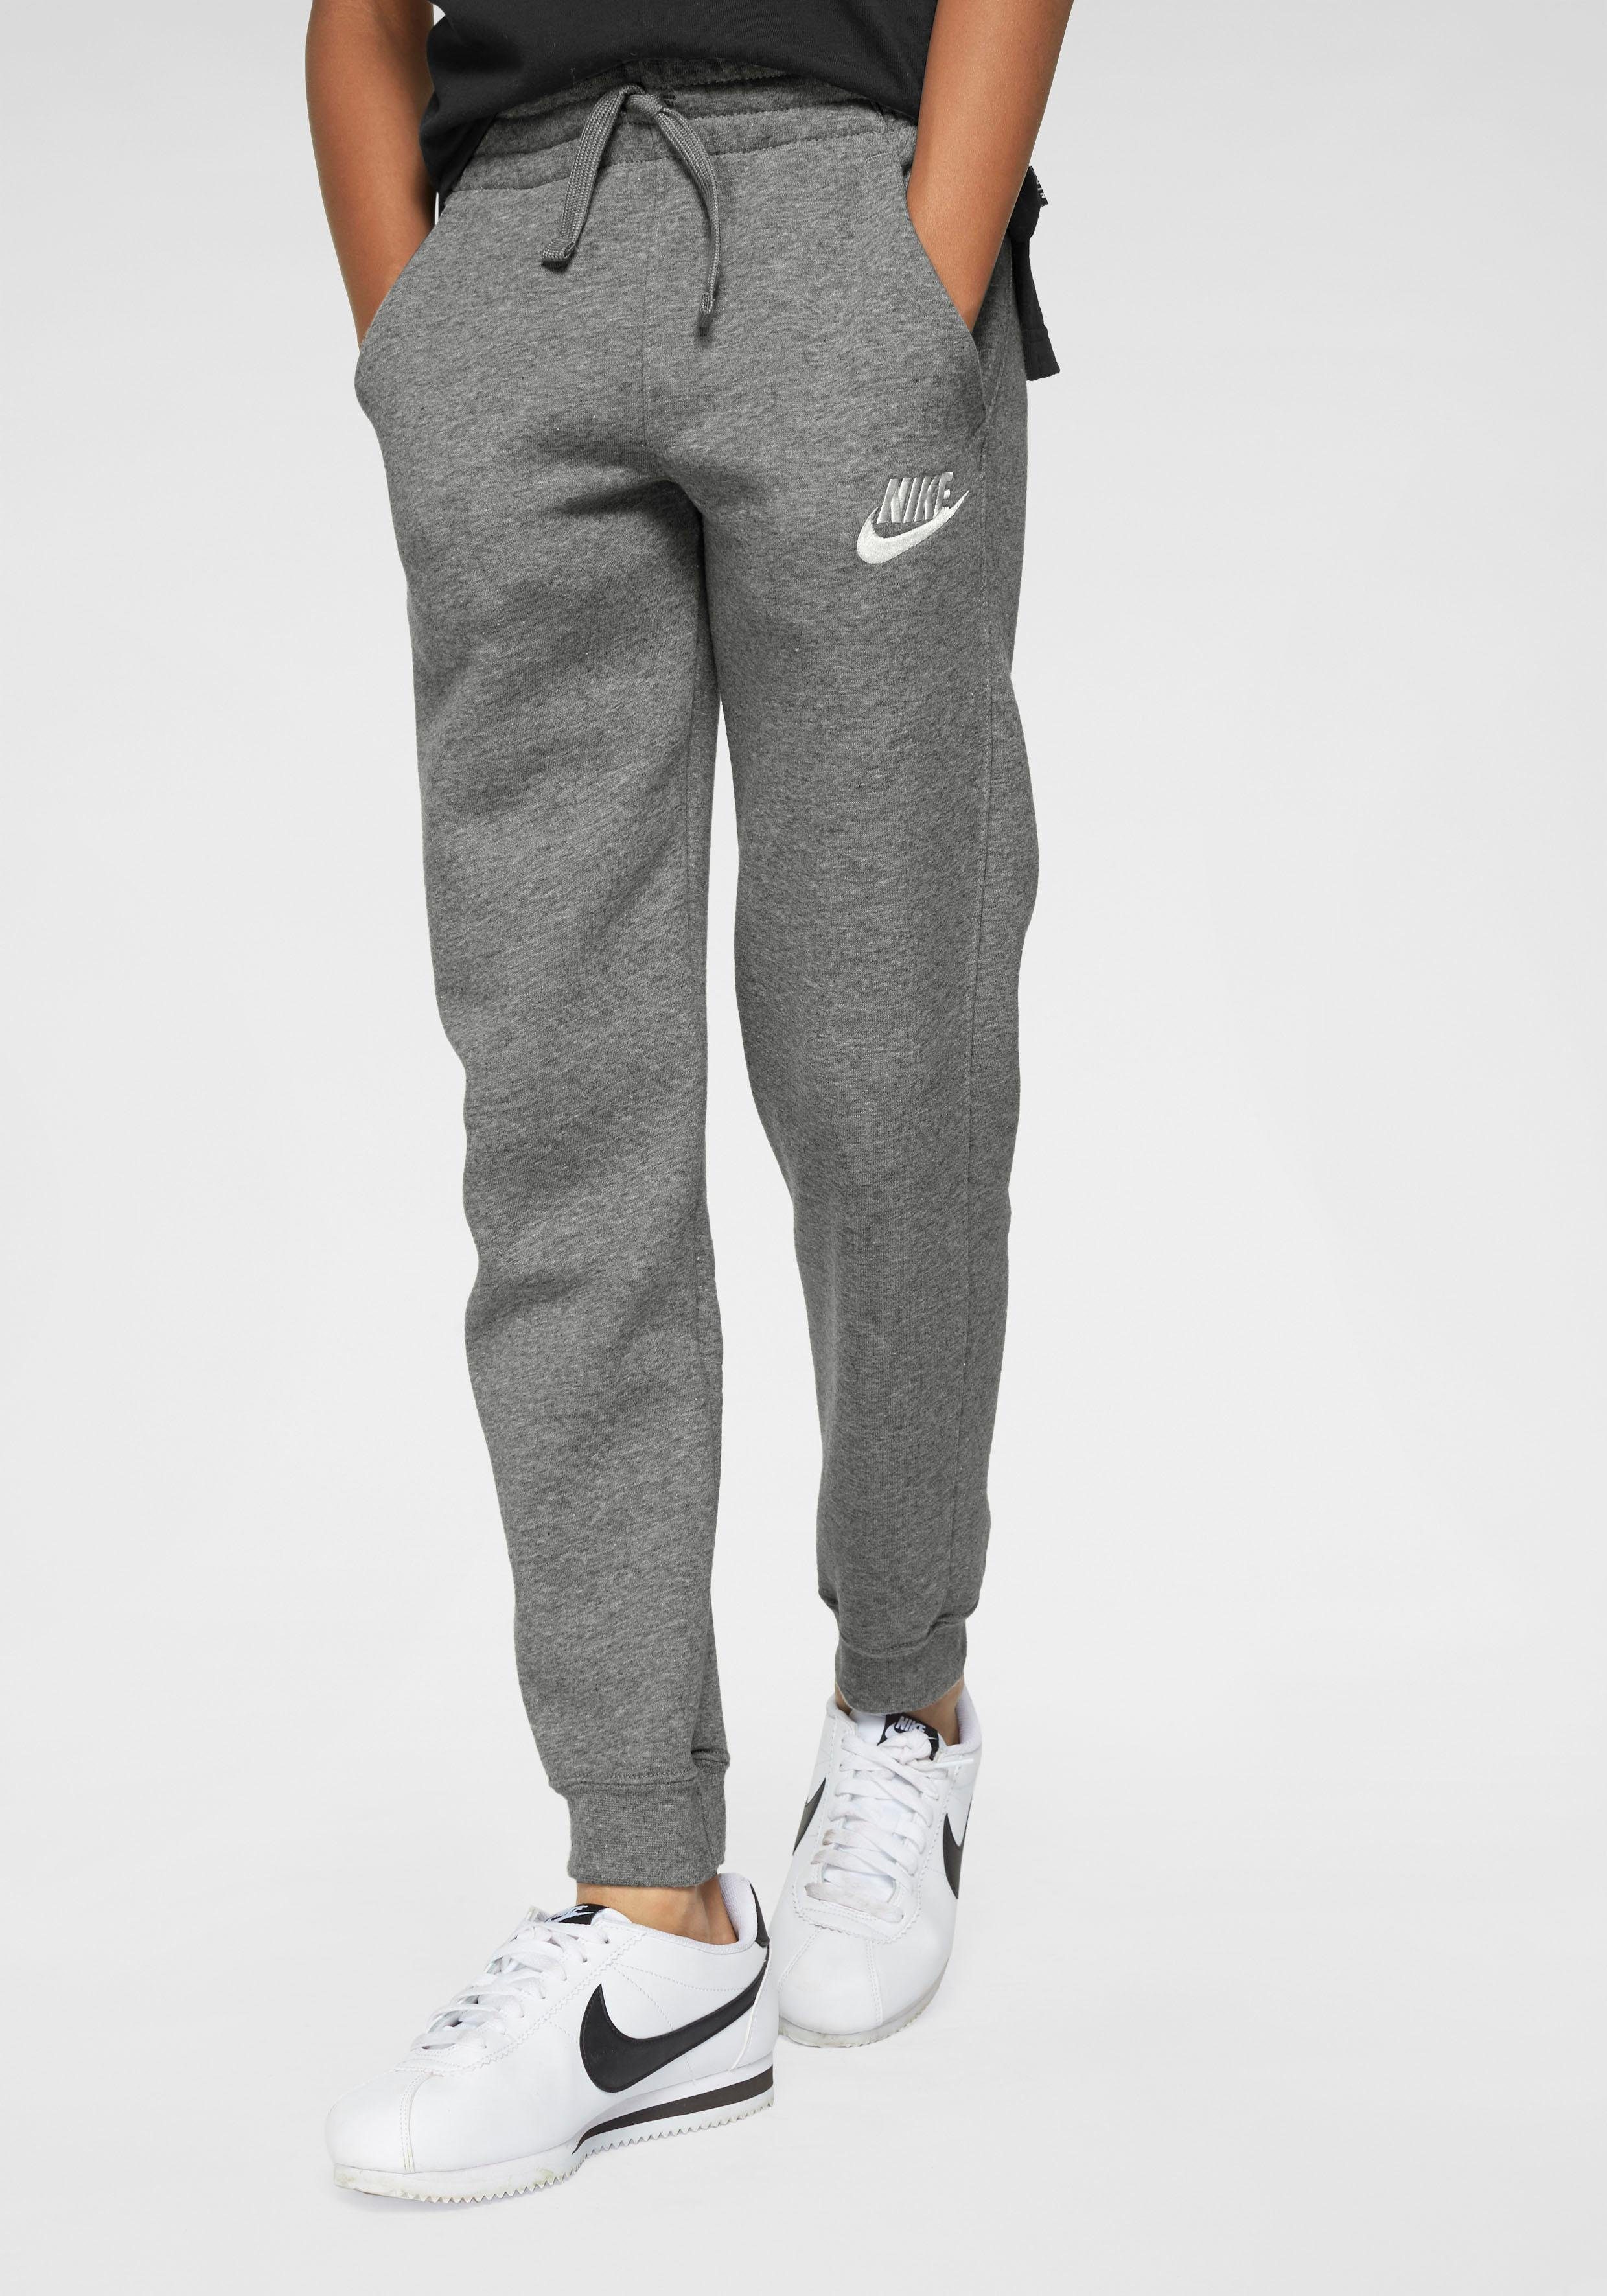 Neu eingetroffene Artikel Nike Sportswear CLUB grau-meliert B NSW JOGGER FLEECE PANT Jogginghose